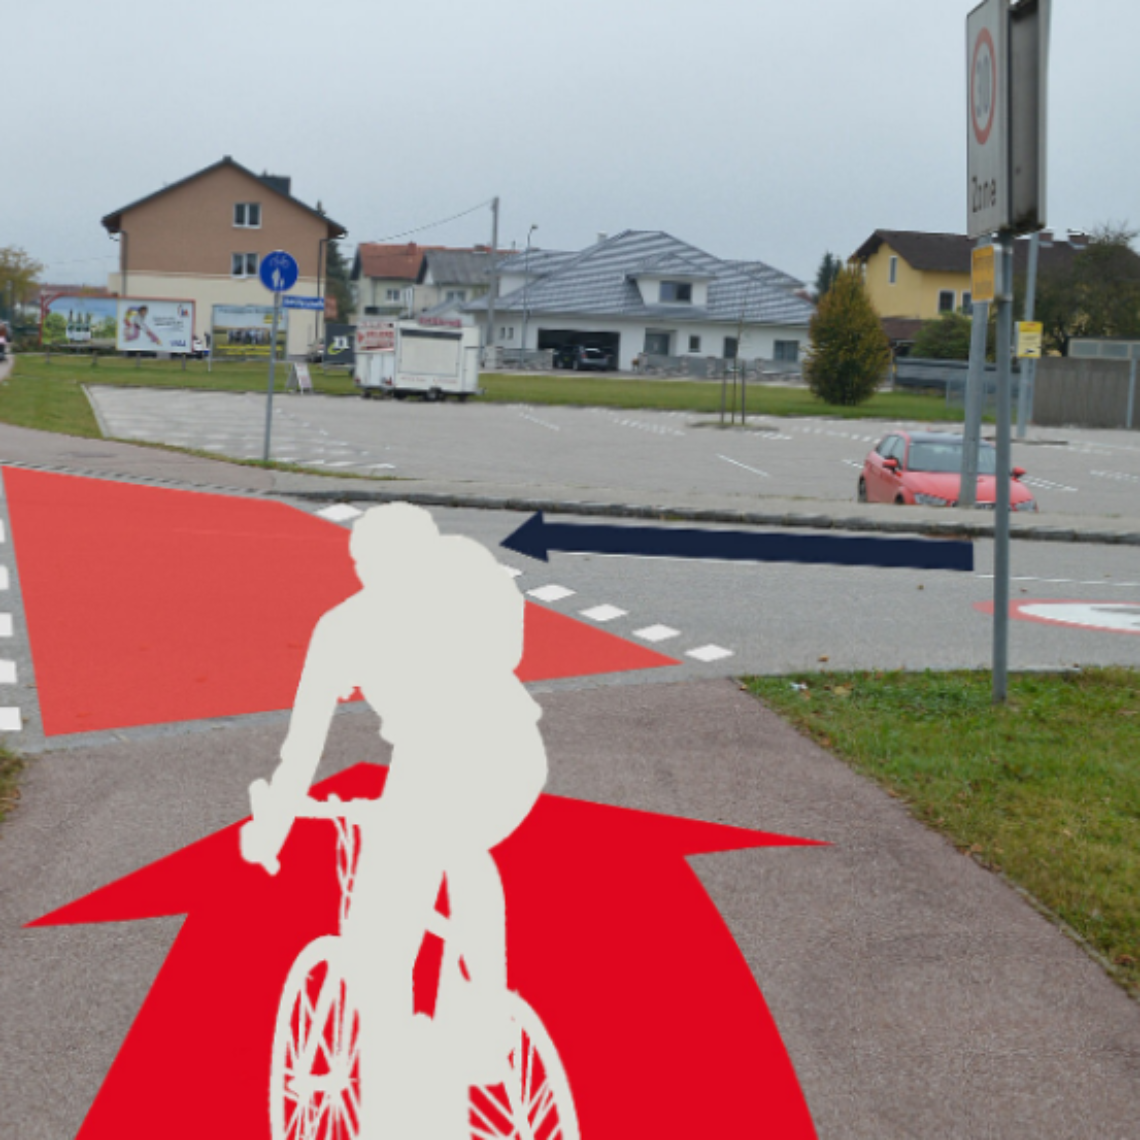 Radfahrerüberfahrt mit roter, flächiger Markierung